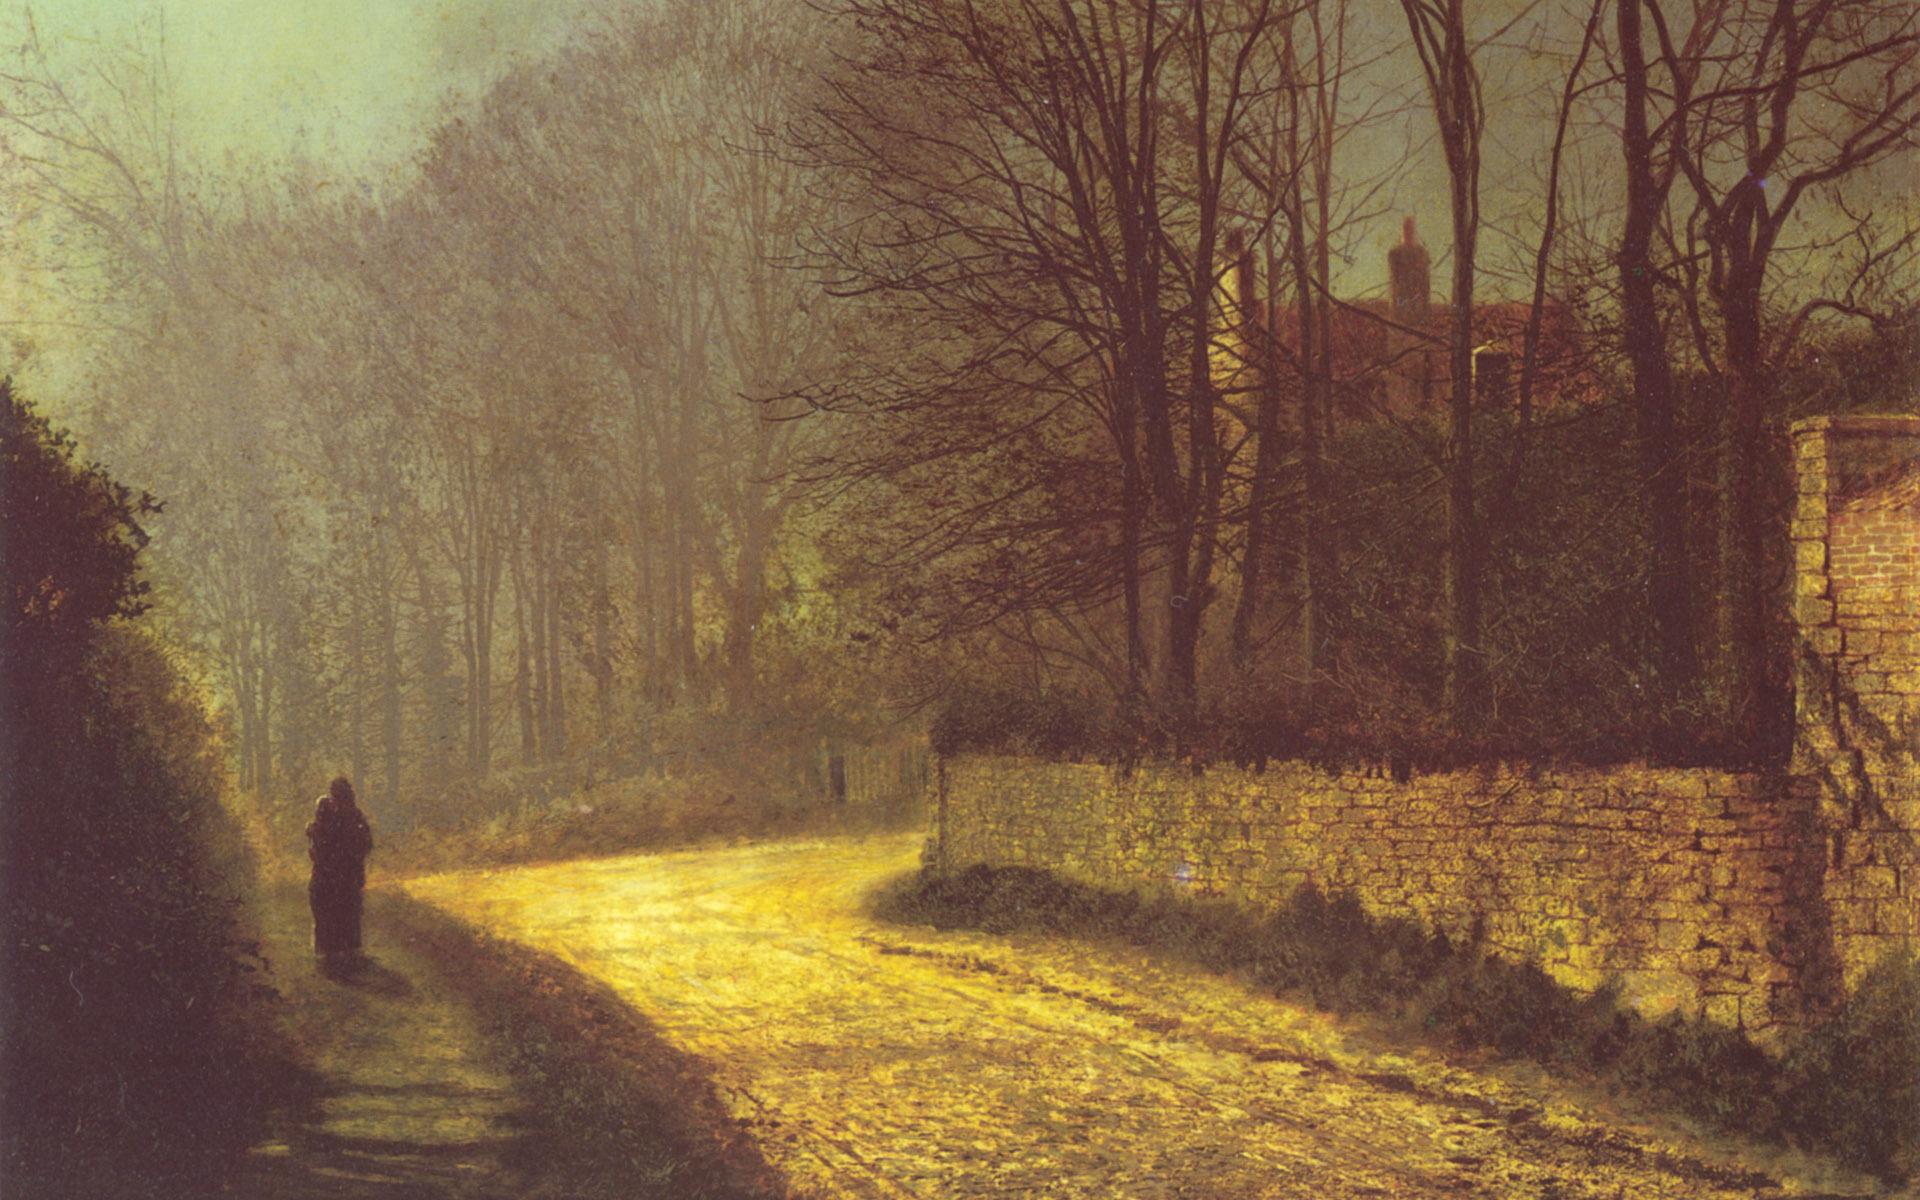 Картина, осень, дорога, фигура 1920x1200